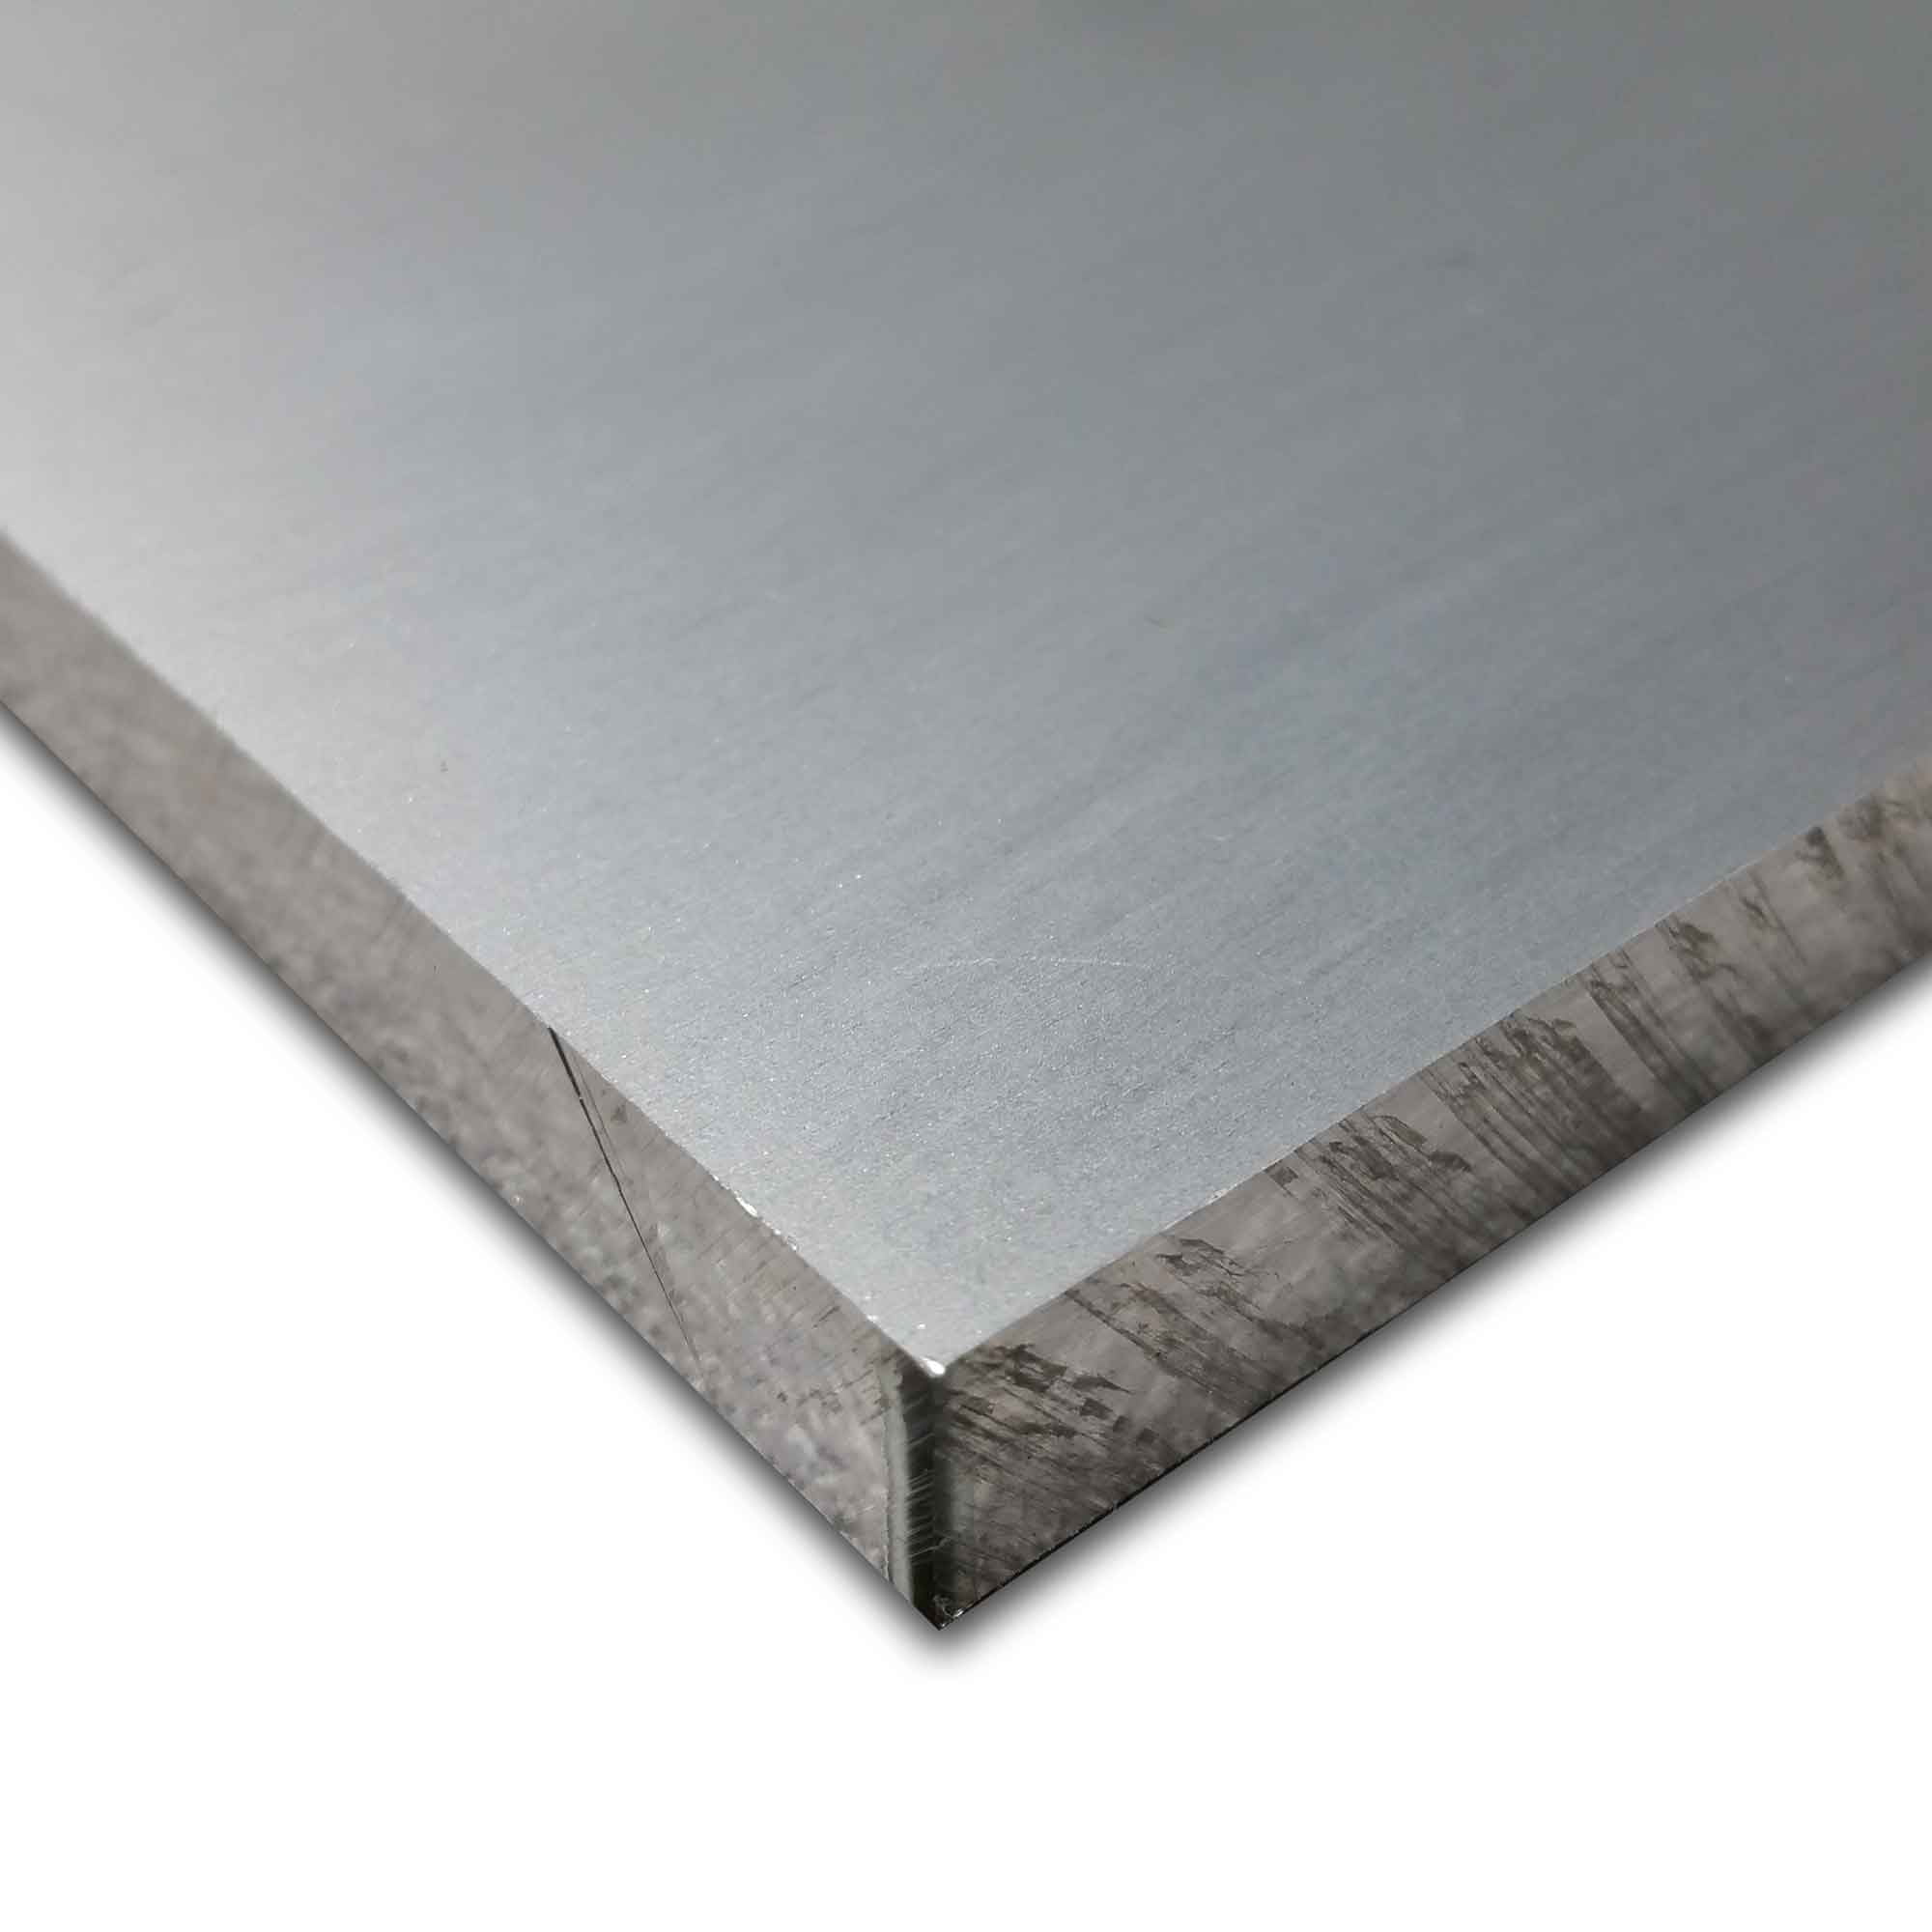 1pc aluminum plate quantity!! 1/2 X 5 1/2 X 9 1/2-7075 T651 